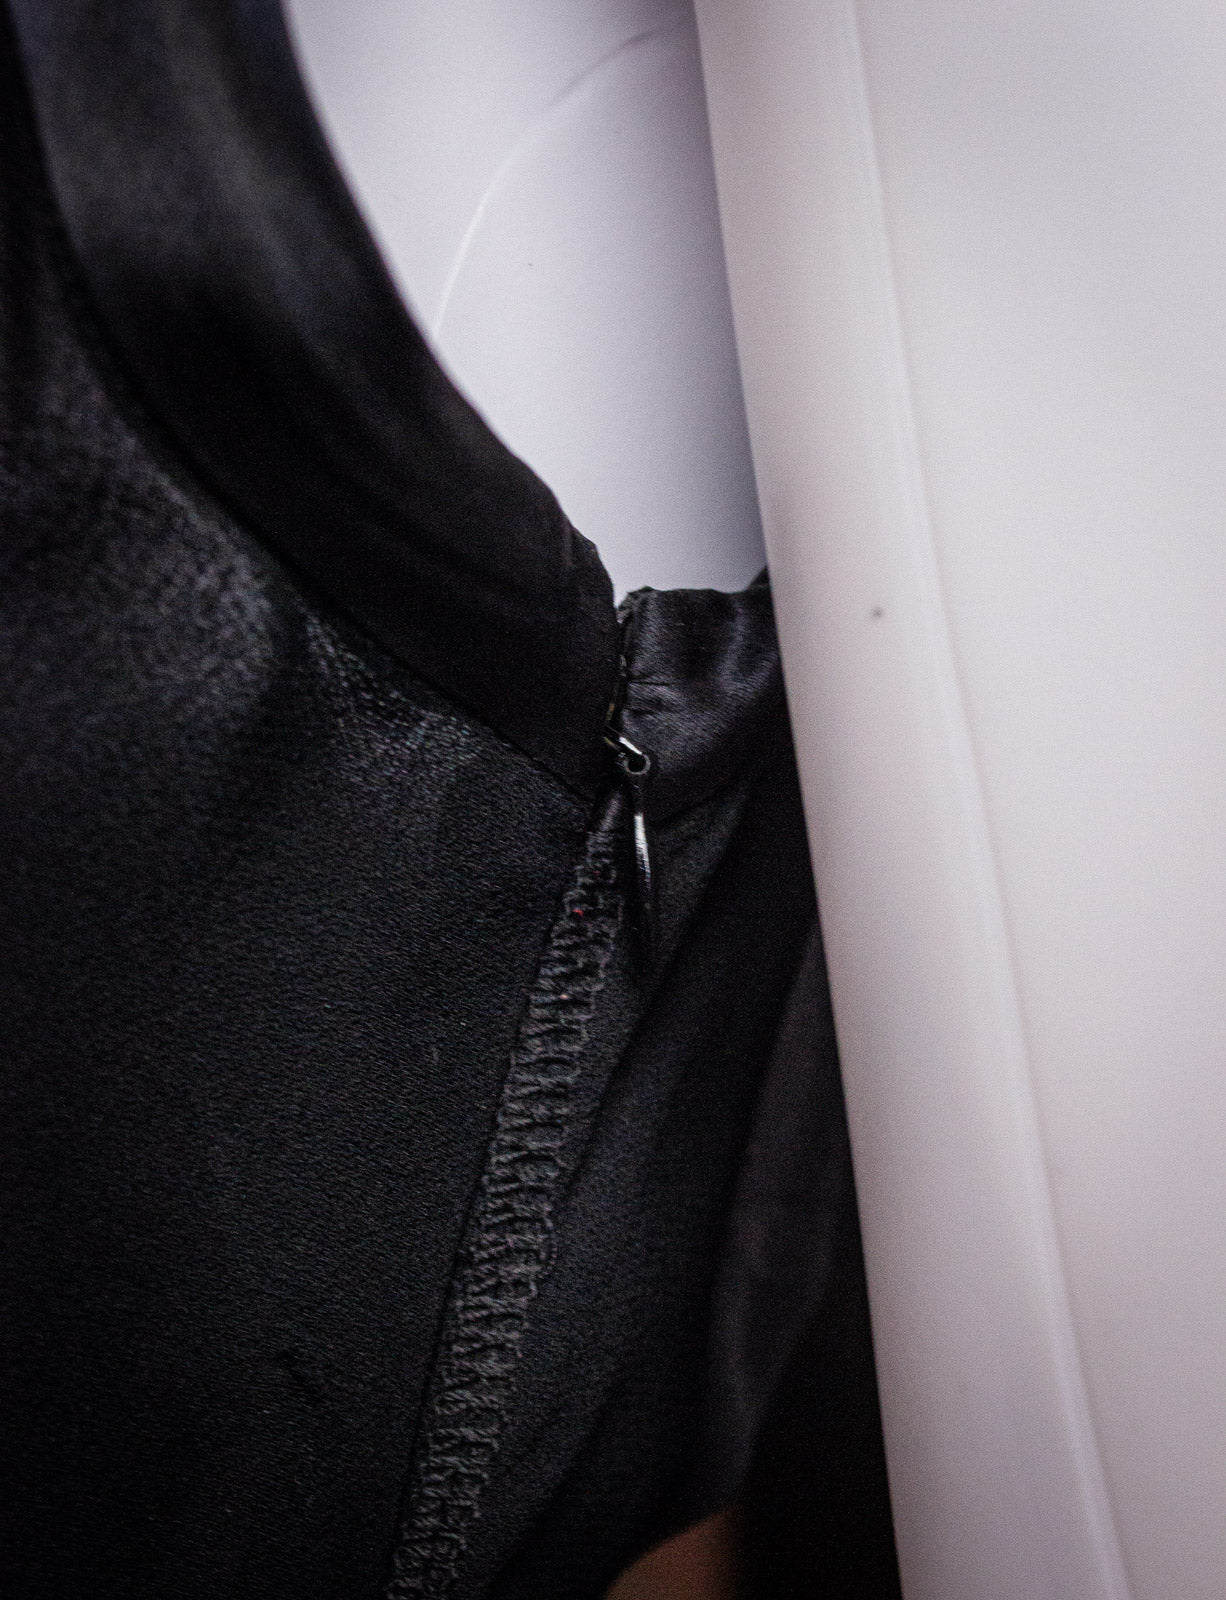 Prada Black Silk Bias Cut Sleeveless Dress XS